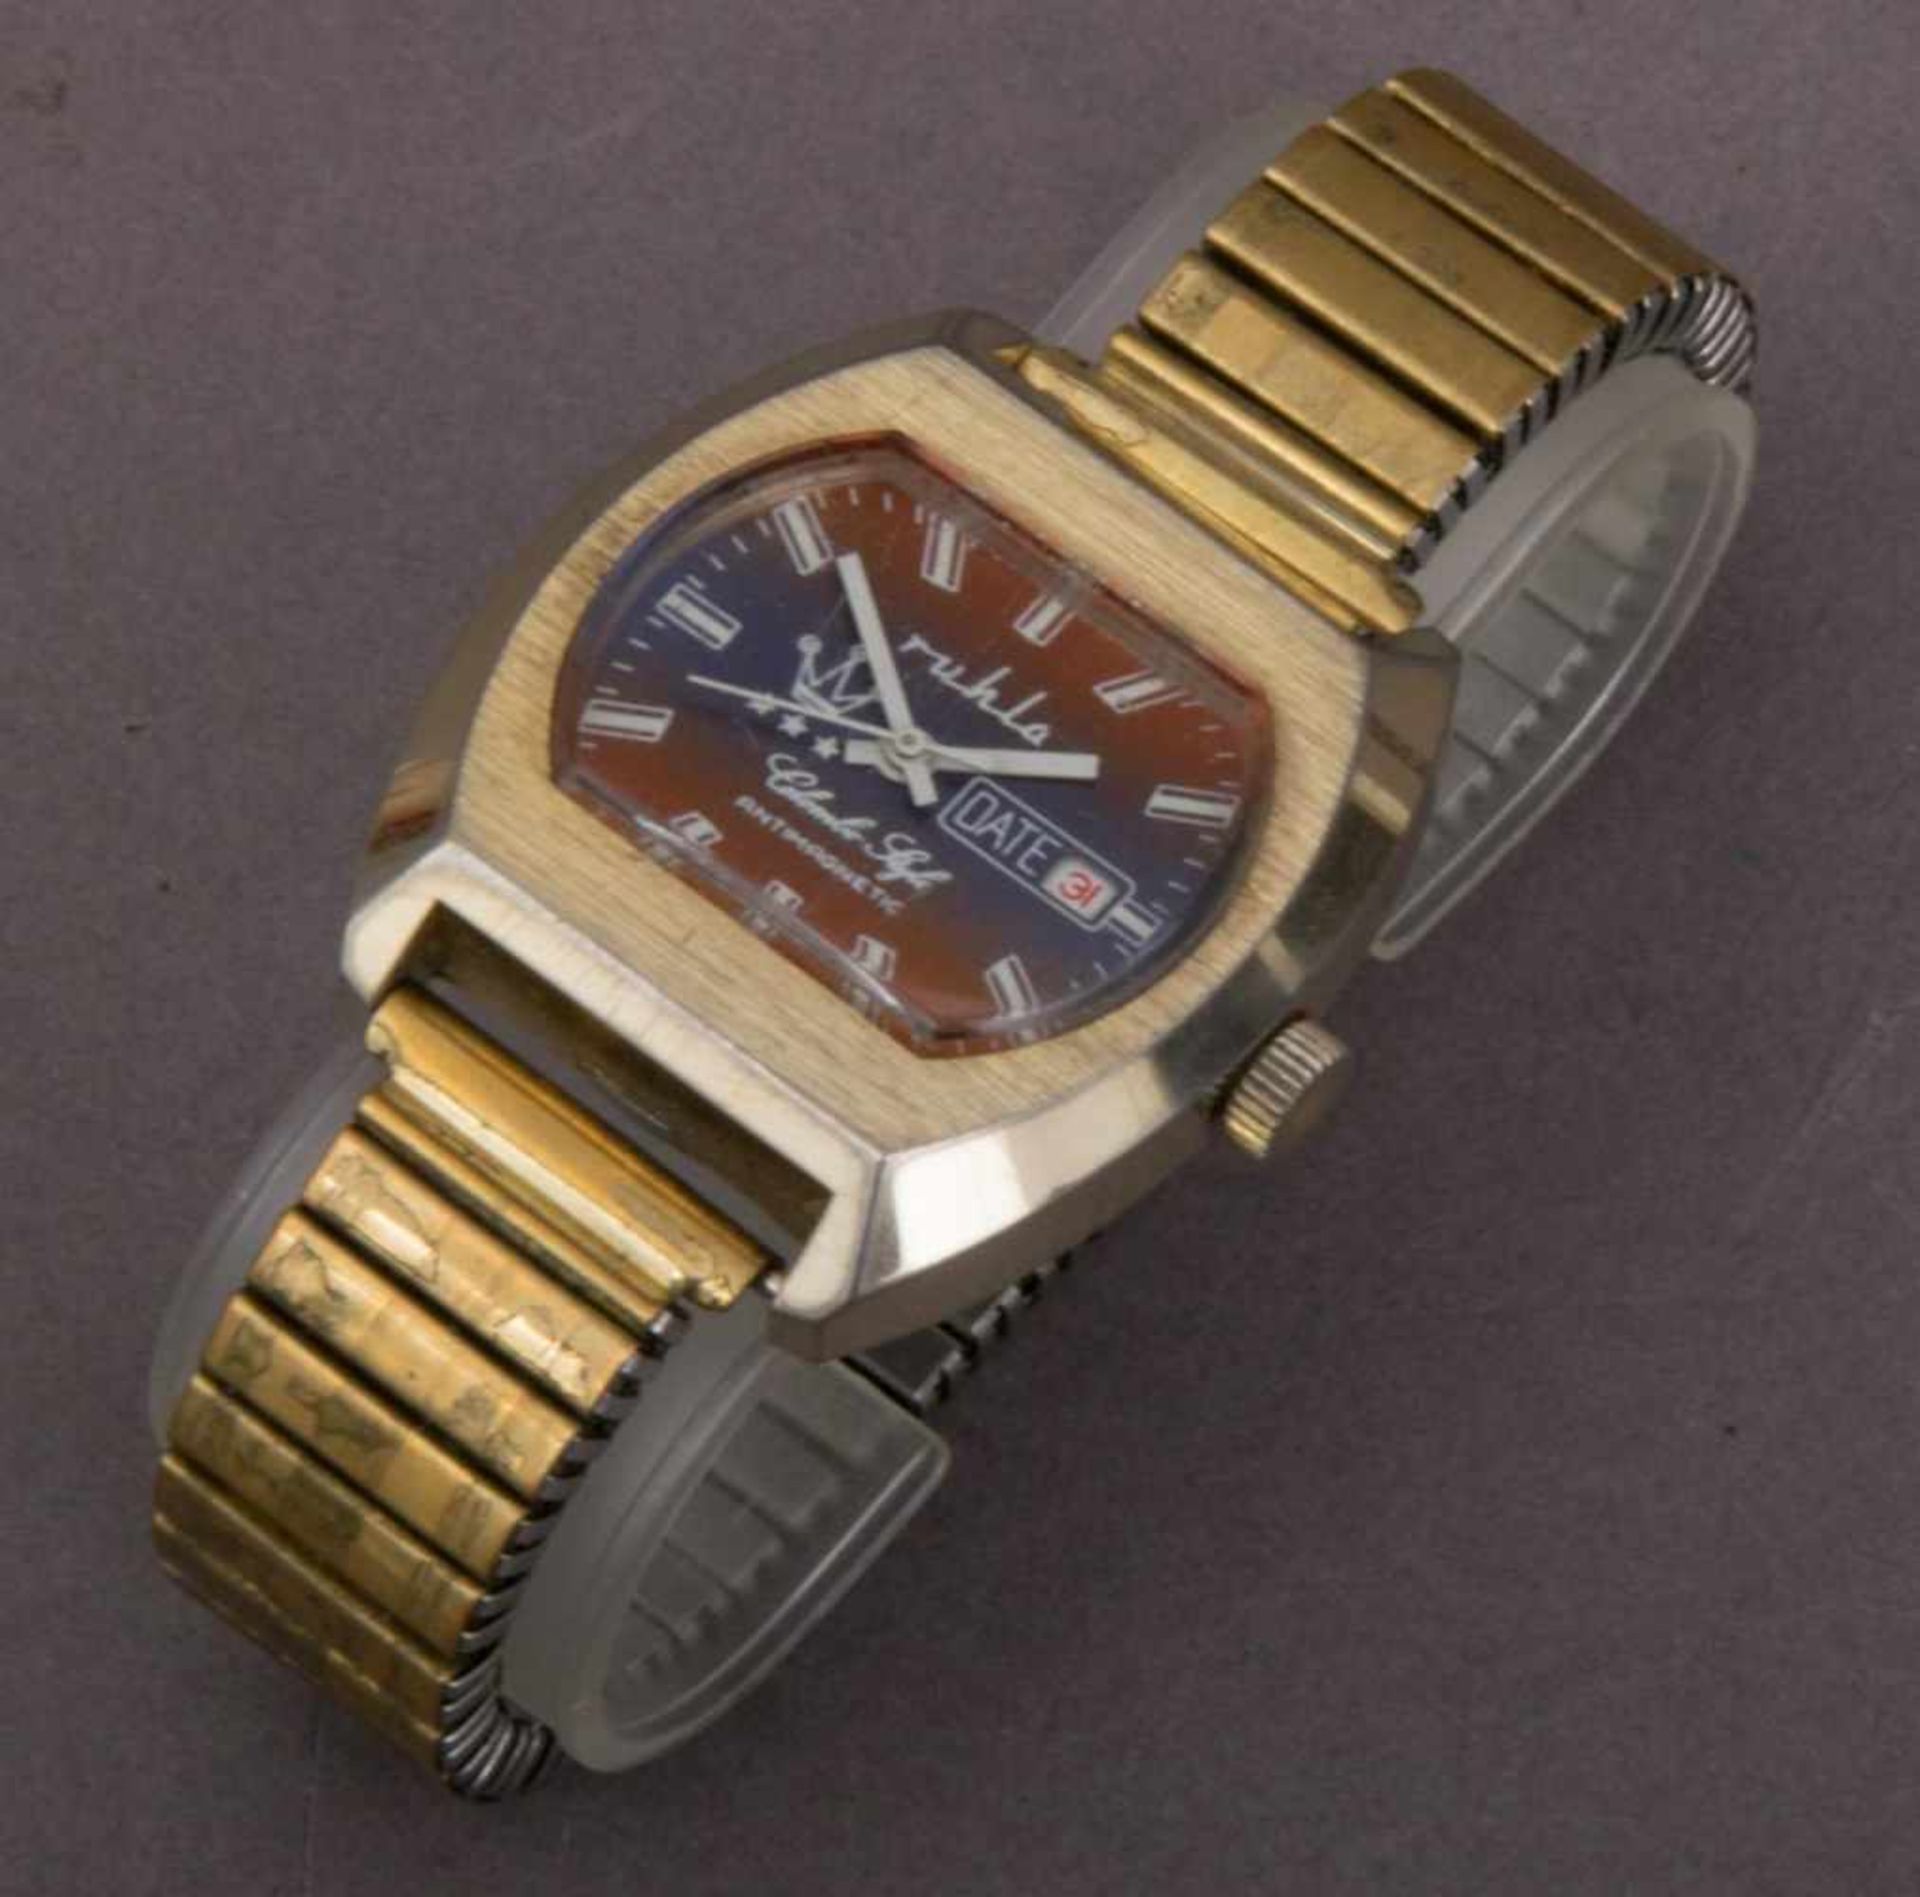 3 alte RUHLA - Armbanduhren, Mittel 20. Jhd. Versch. Modelle, Formen, Größen, Erhalt & Funktionen. - Bild 2 aus 8